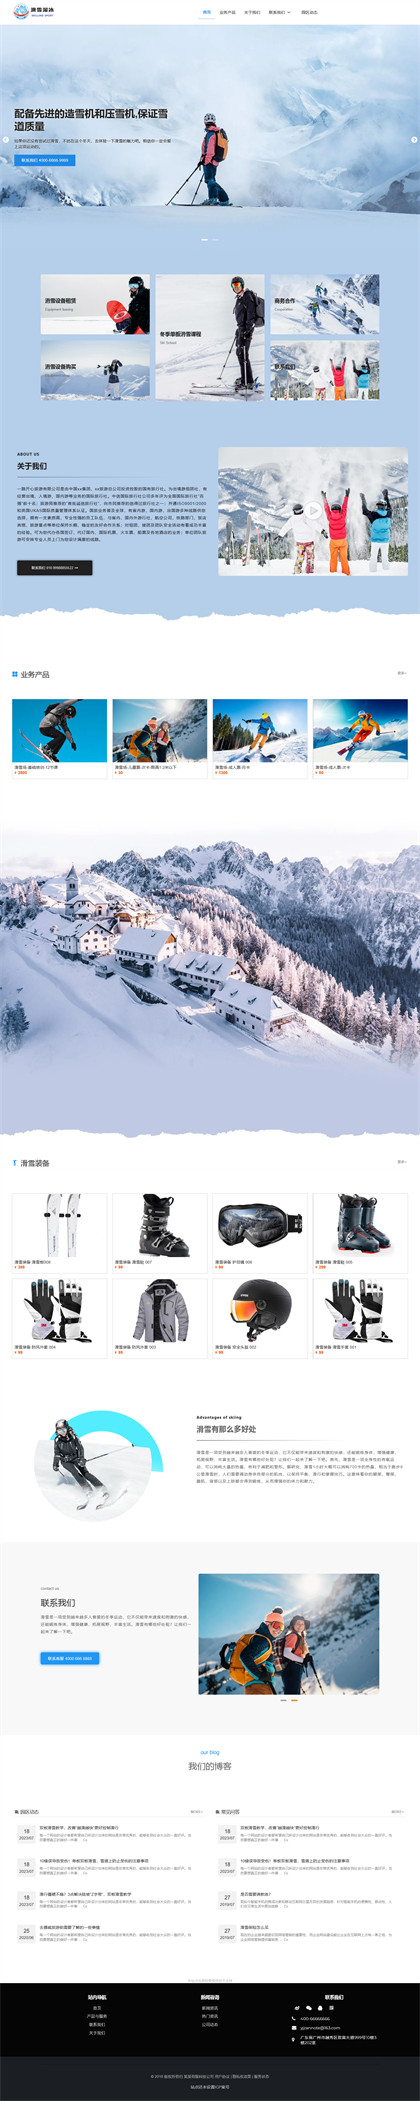 滑雪场-溜冰场-滑雪培训-户外滑雪场-风景区-网站模板网站模板图片